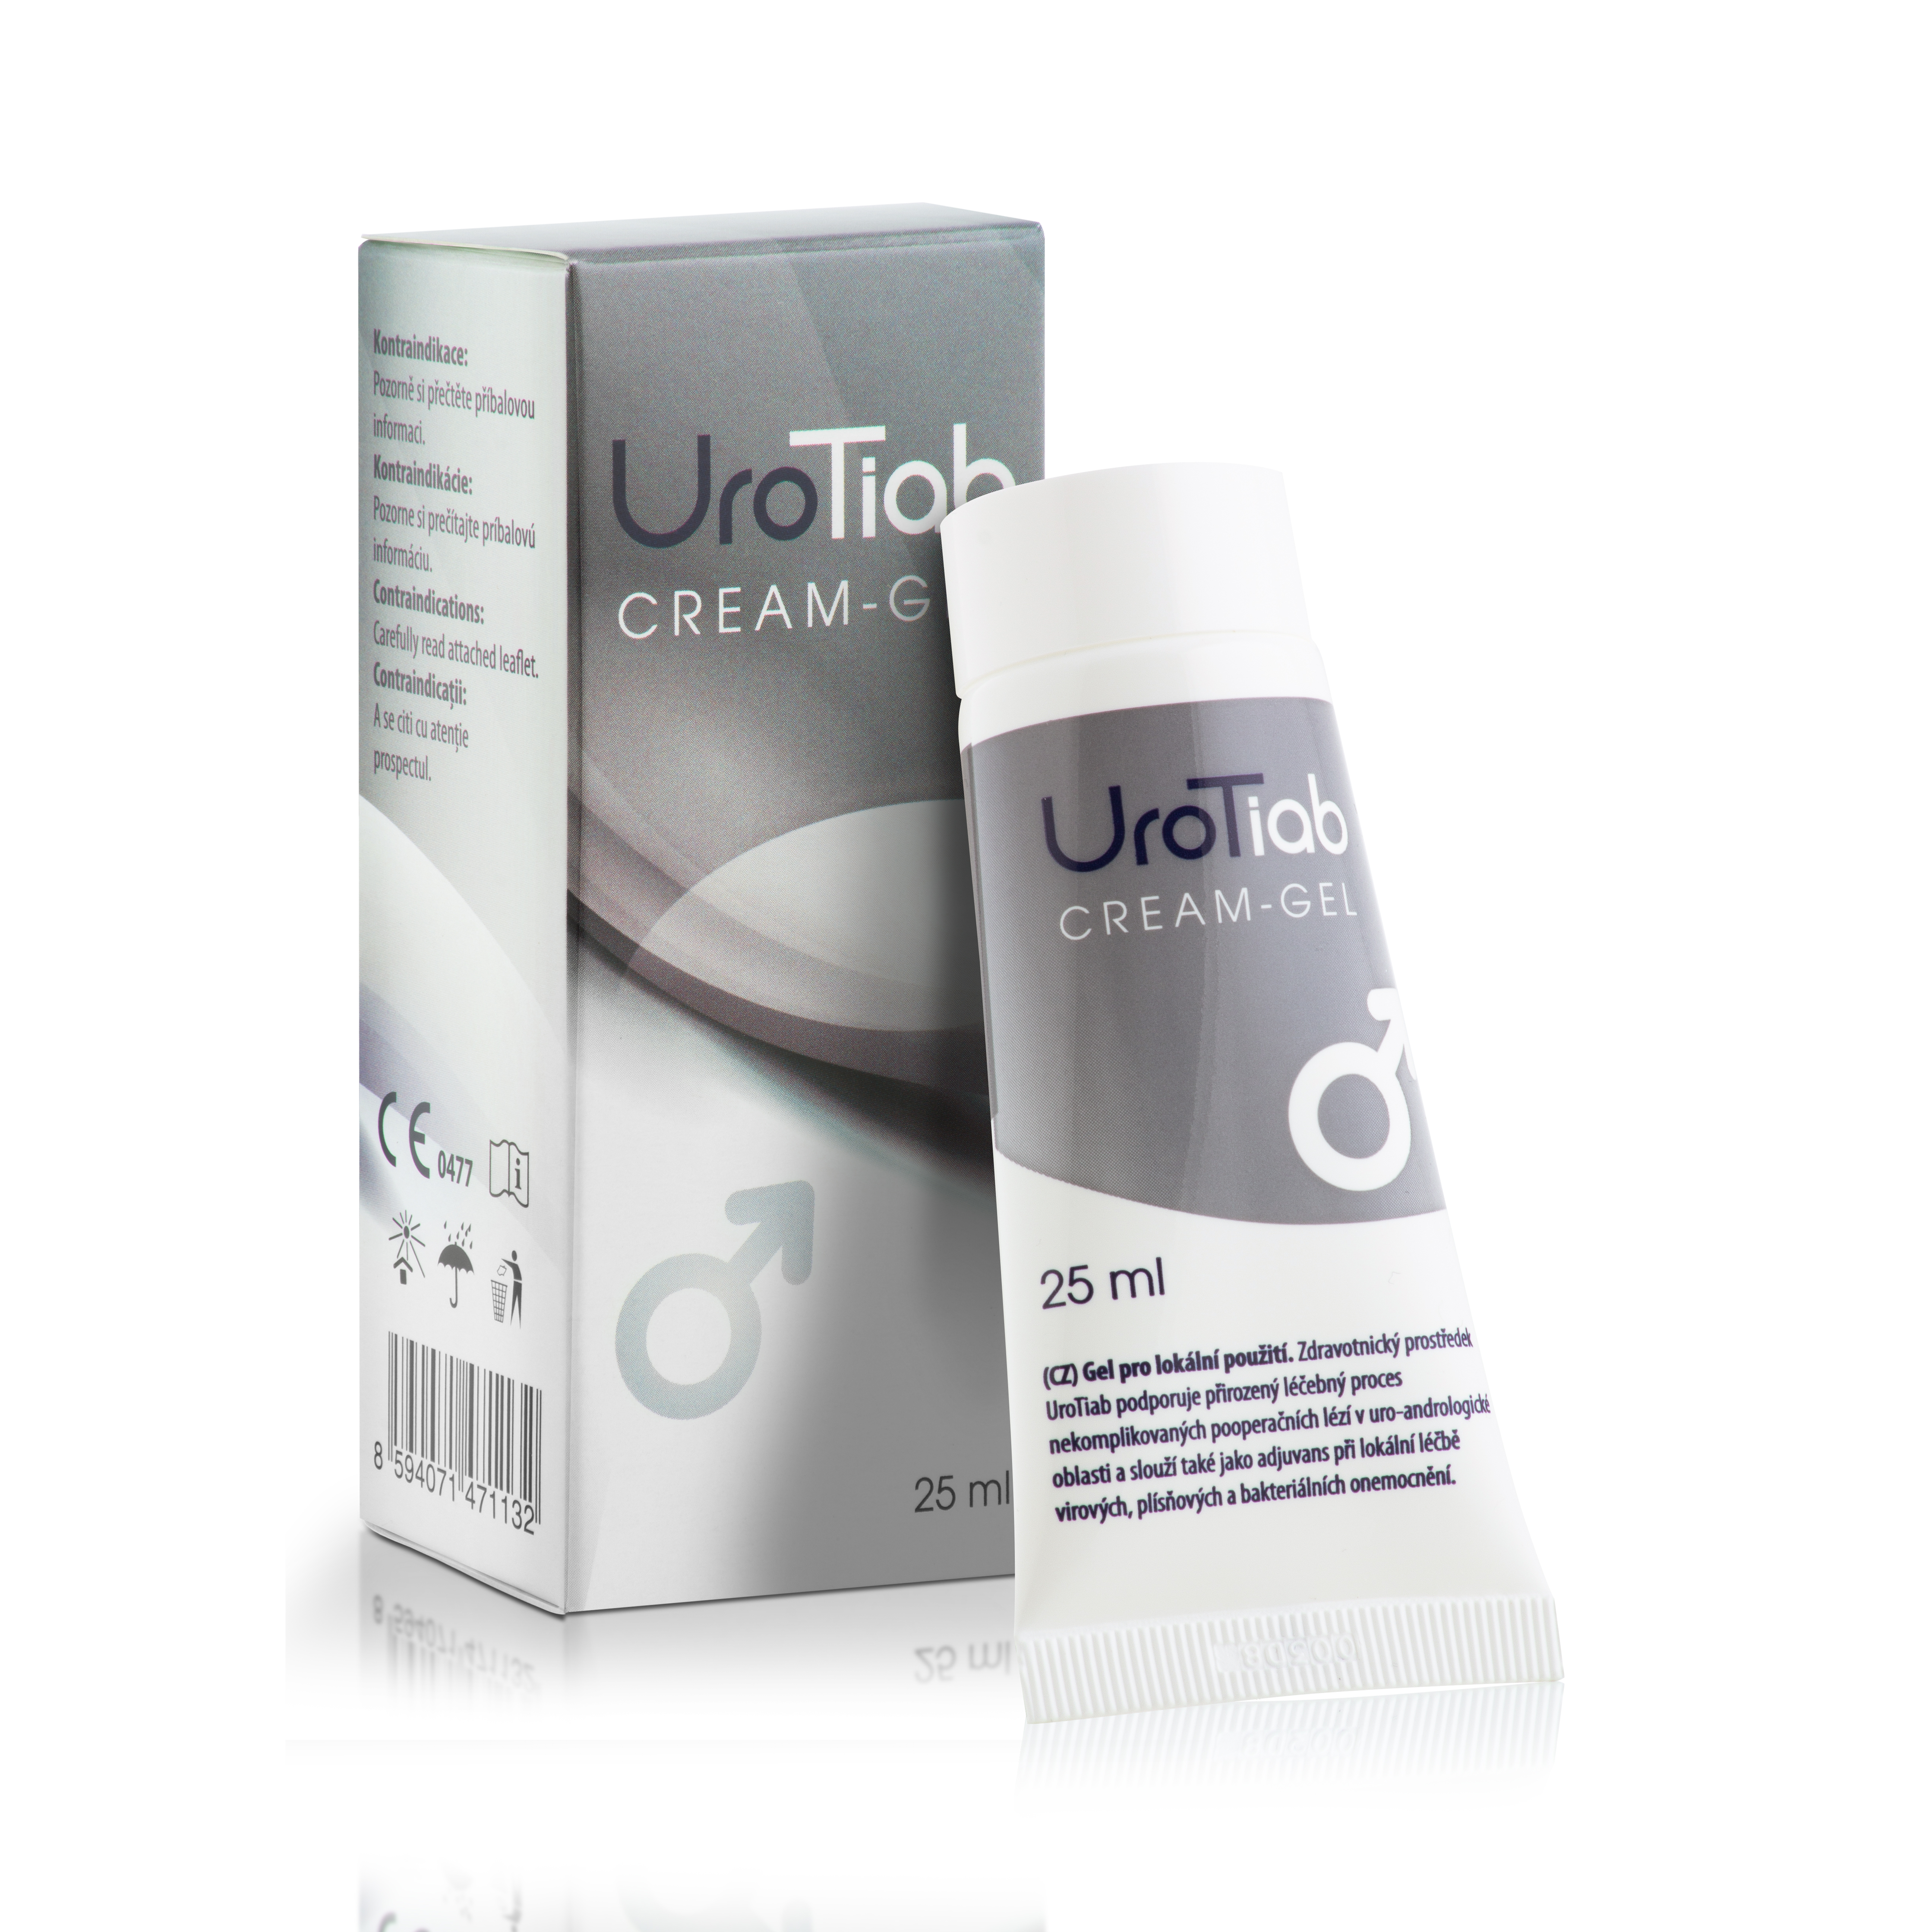 Crema gel UroTiab, 25 ml, Heaton